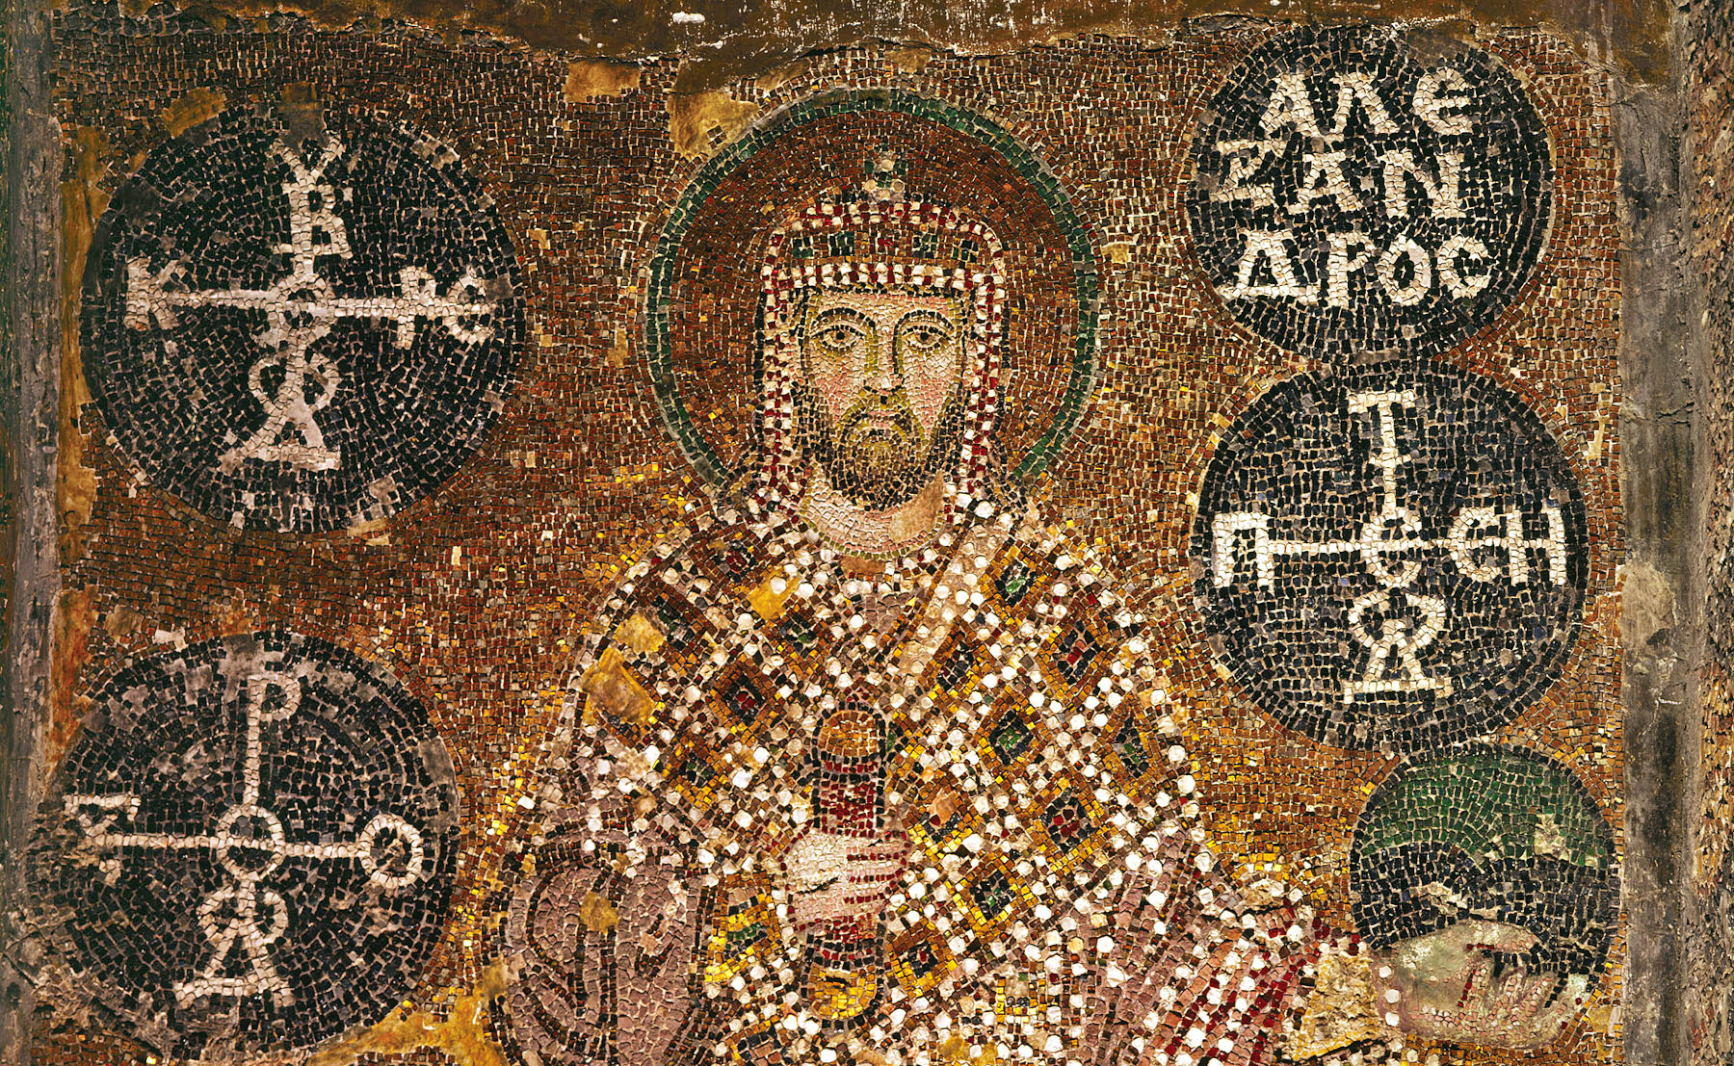 Alexander-Mosaic-of-Hagia-Sophia-Featured_01